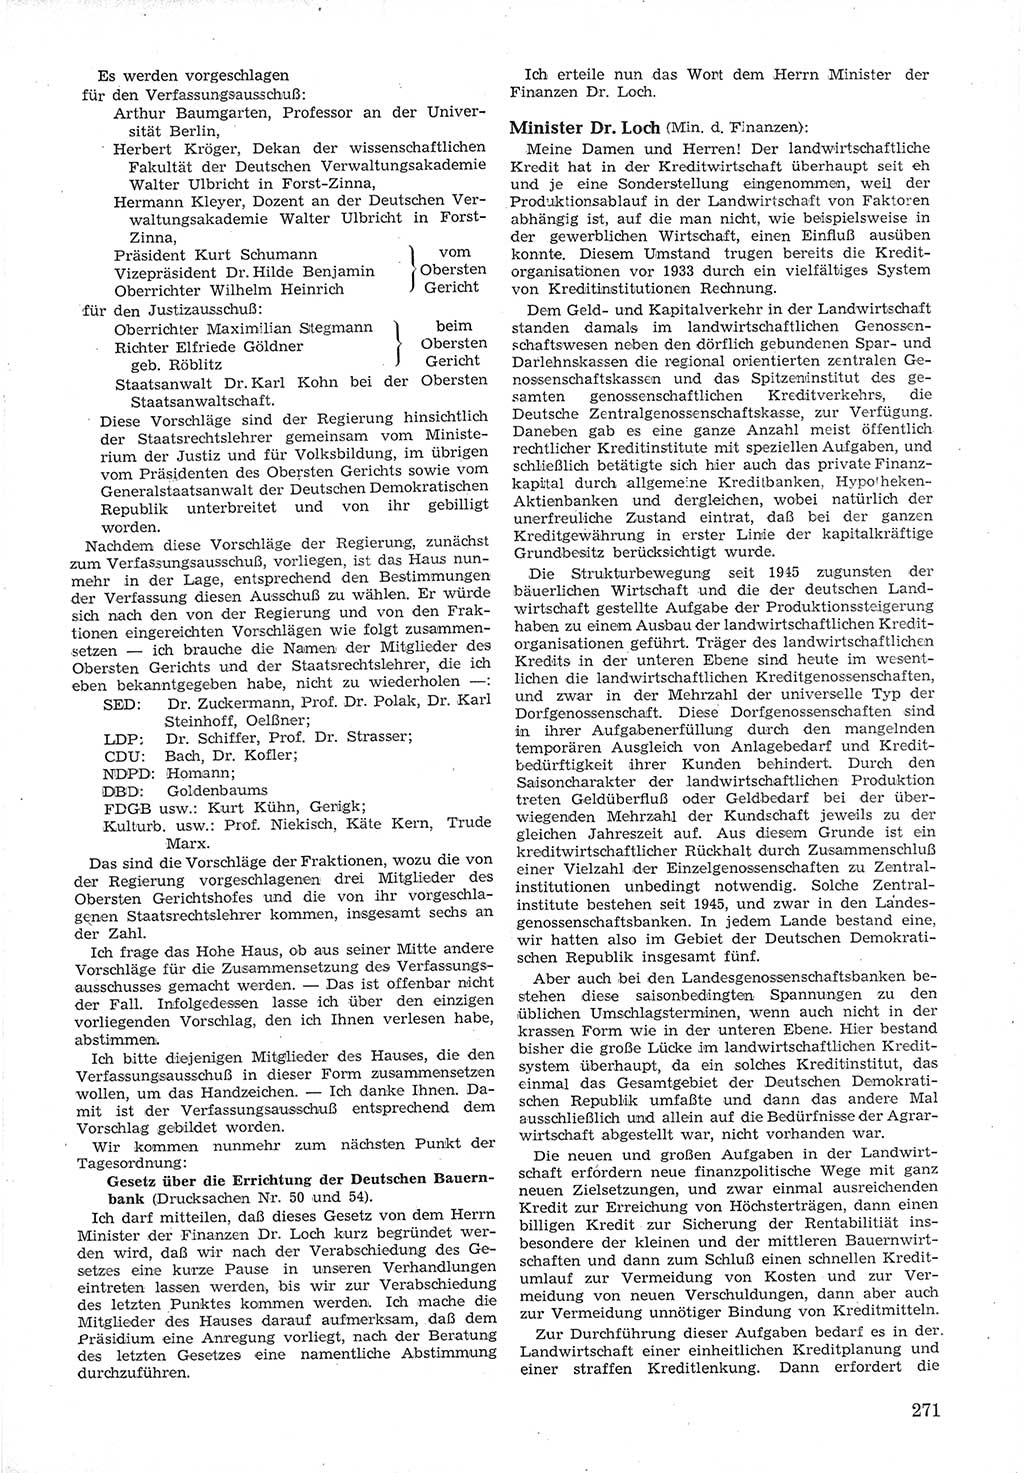 Provisorische Volkskammer (VK) der Deutschen Demokratischen Republik (DDR) 1949-1950, Dokument 285 (Prov. VK DDR 1949-1950, Dok. 285)